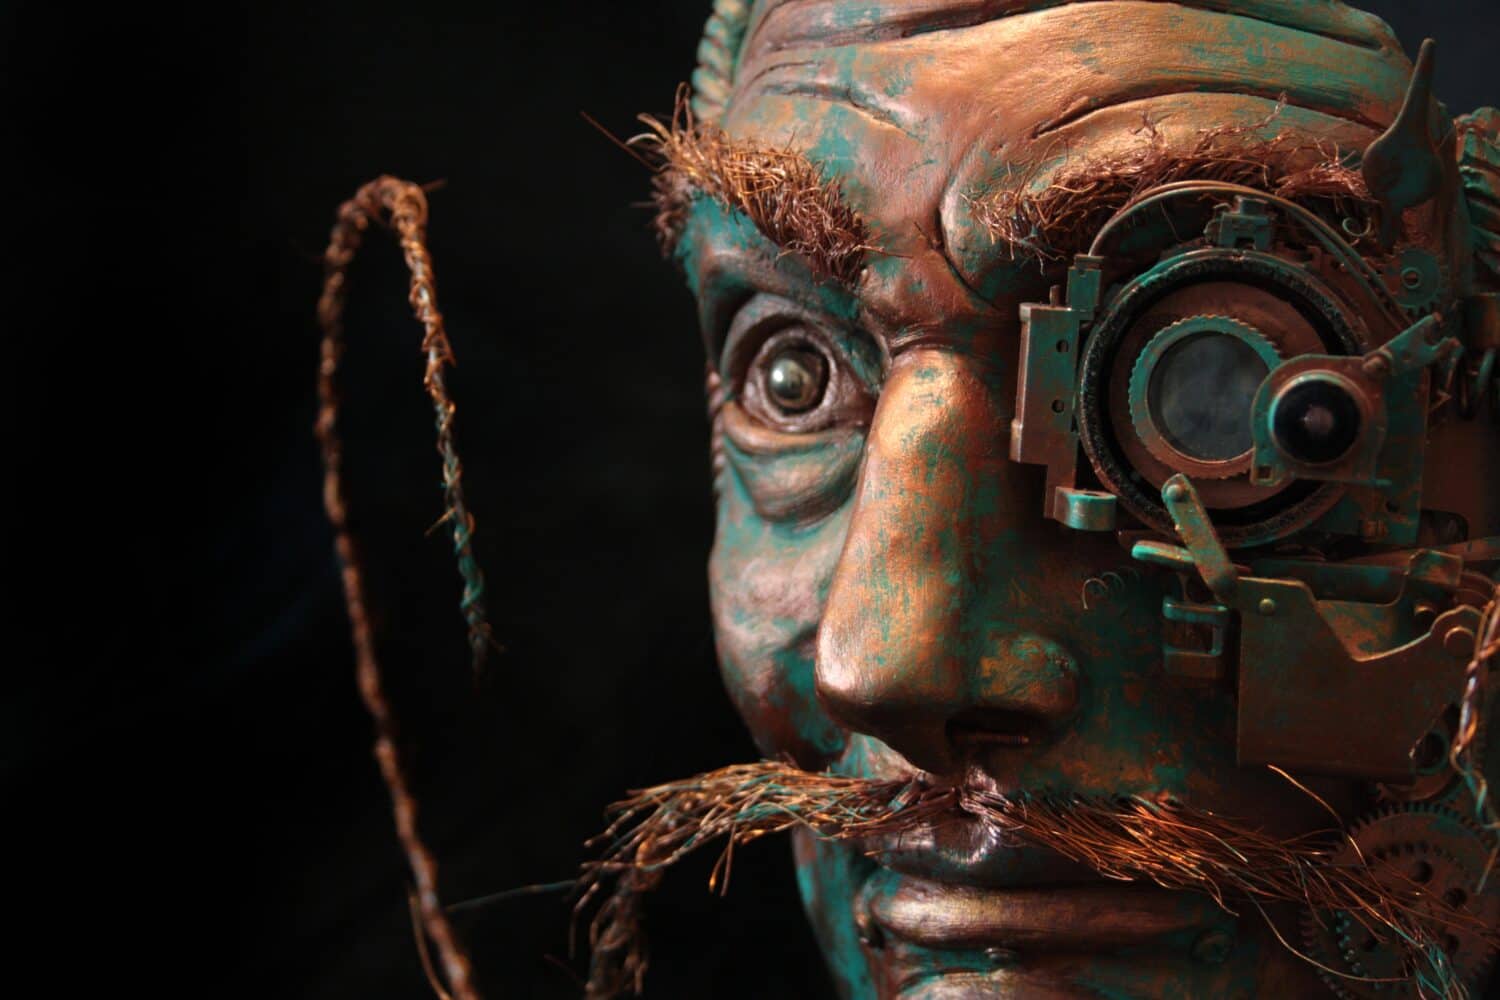 Salvador Dali portrait. Sculpture detail, steampunk style, copper color and oxidized effect.